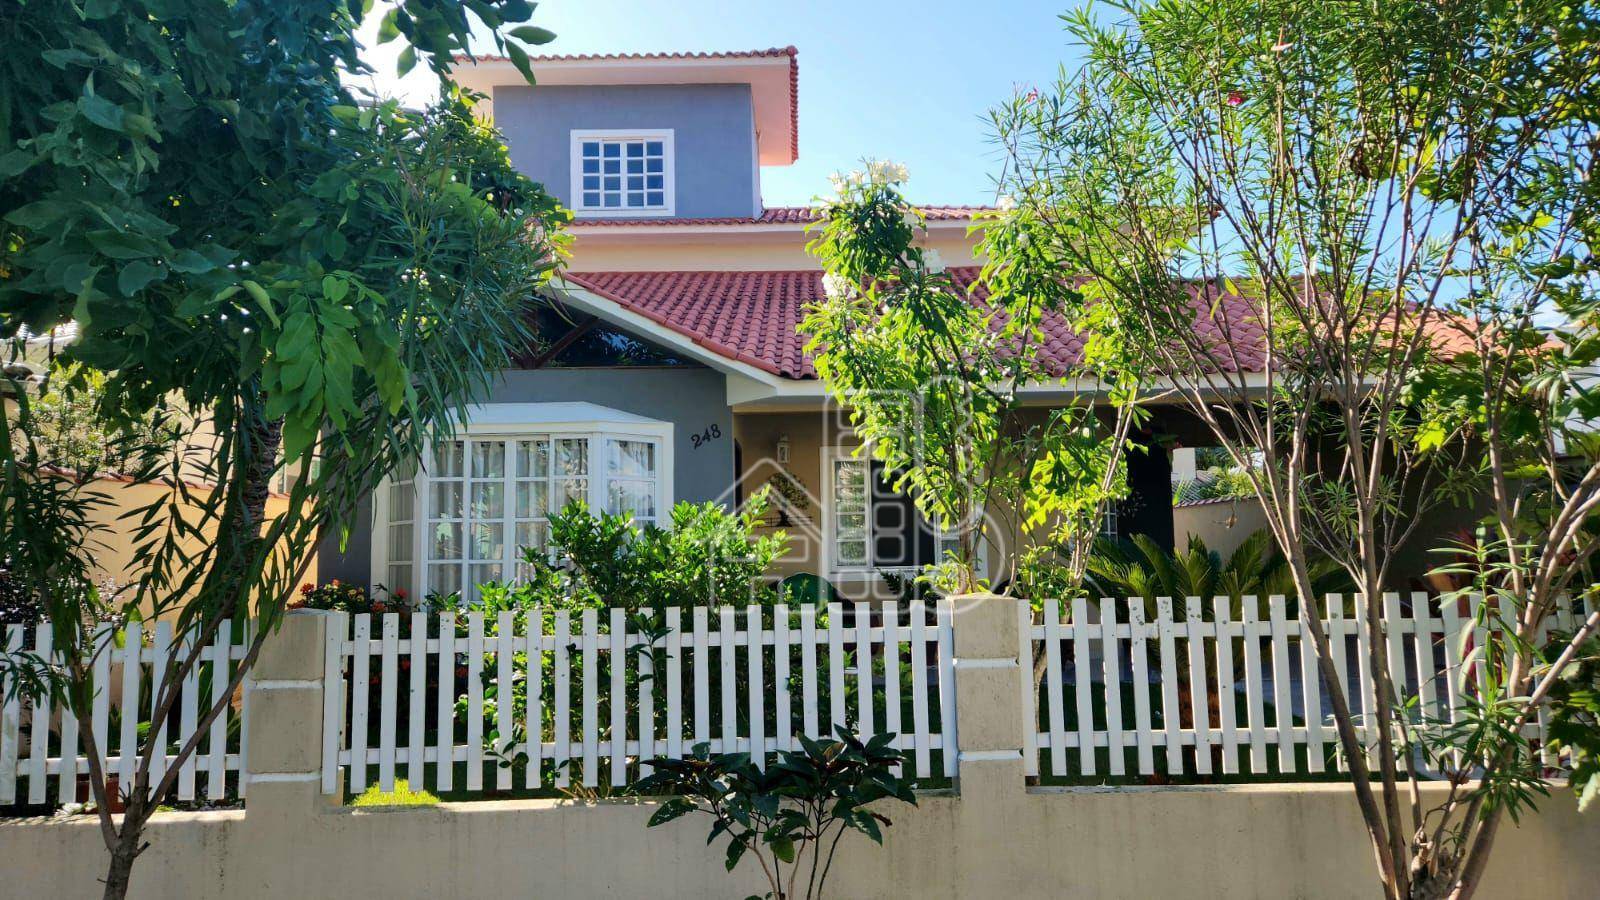 Casa com 4 dormitórios à venda, 258 m² por R$ 2.000.000,99 - São José do Imbassaí - Maricá/RJ